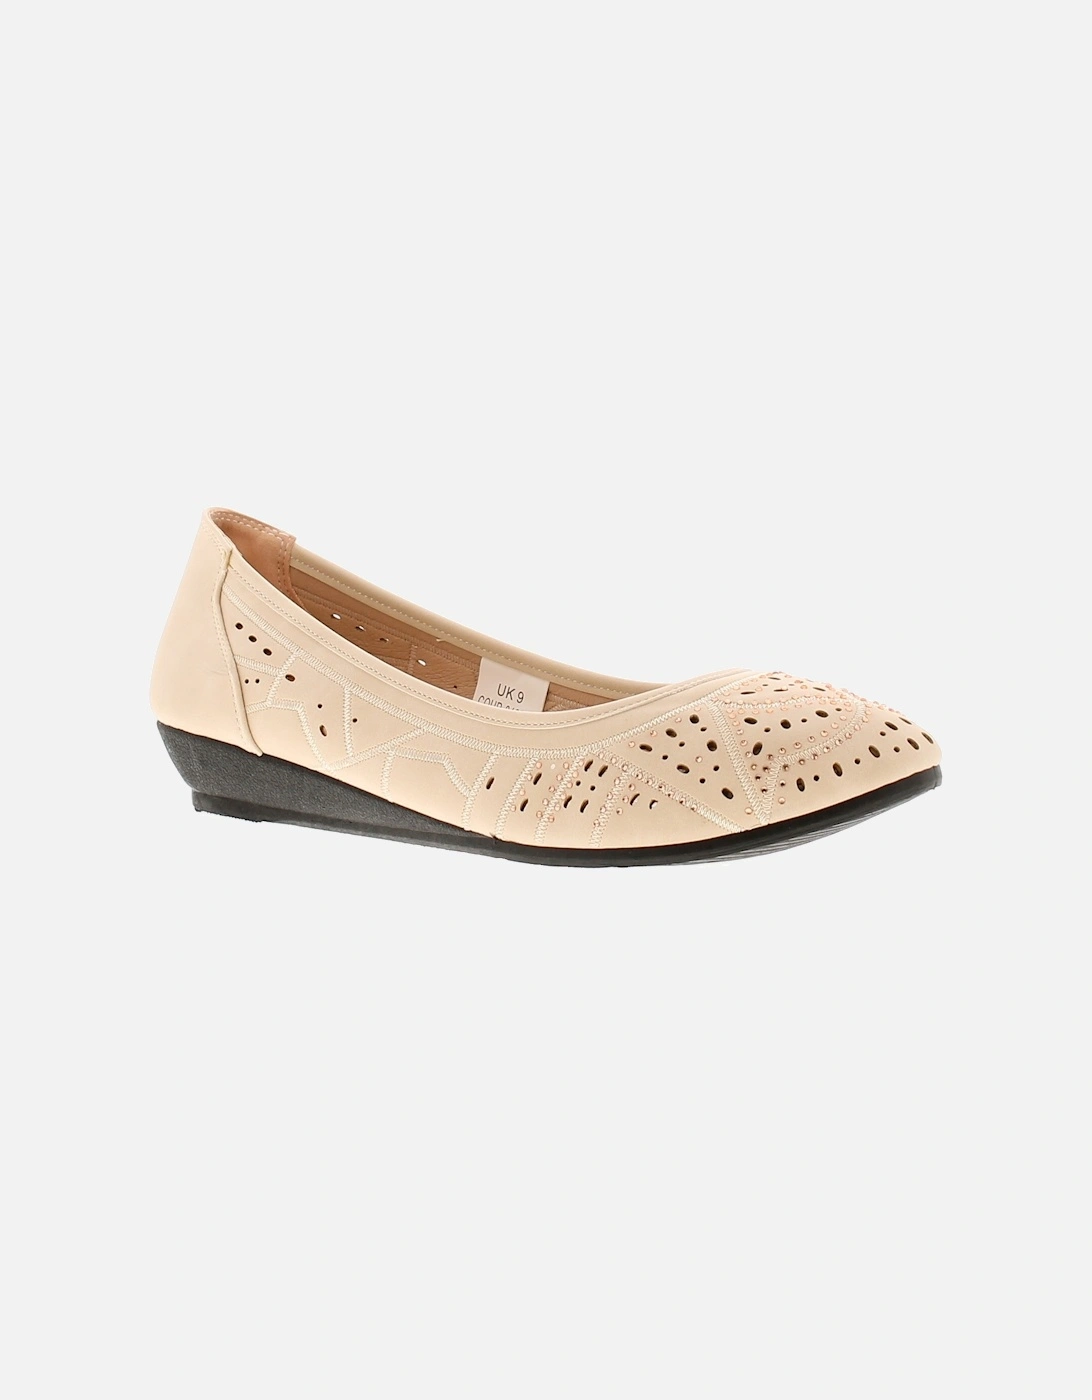 Womens Shoes Wedges Tasha Slip On beige UK Size, 6 of 5